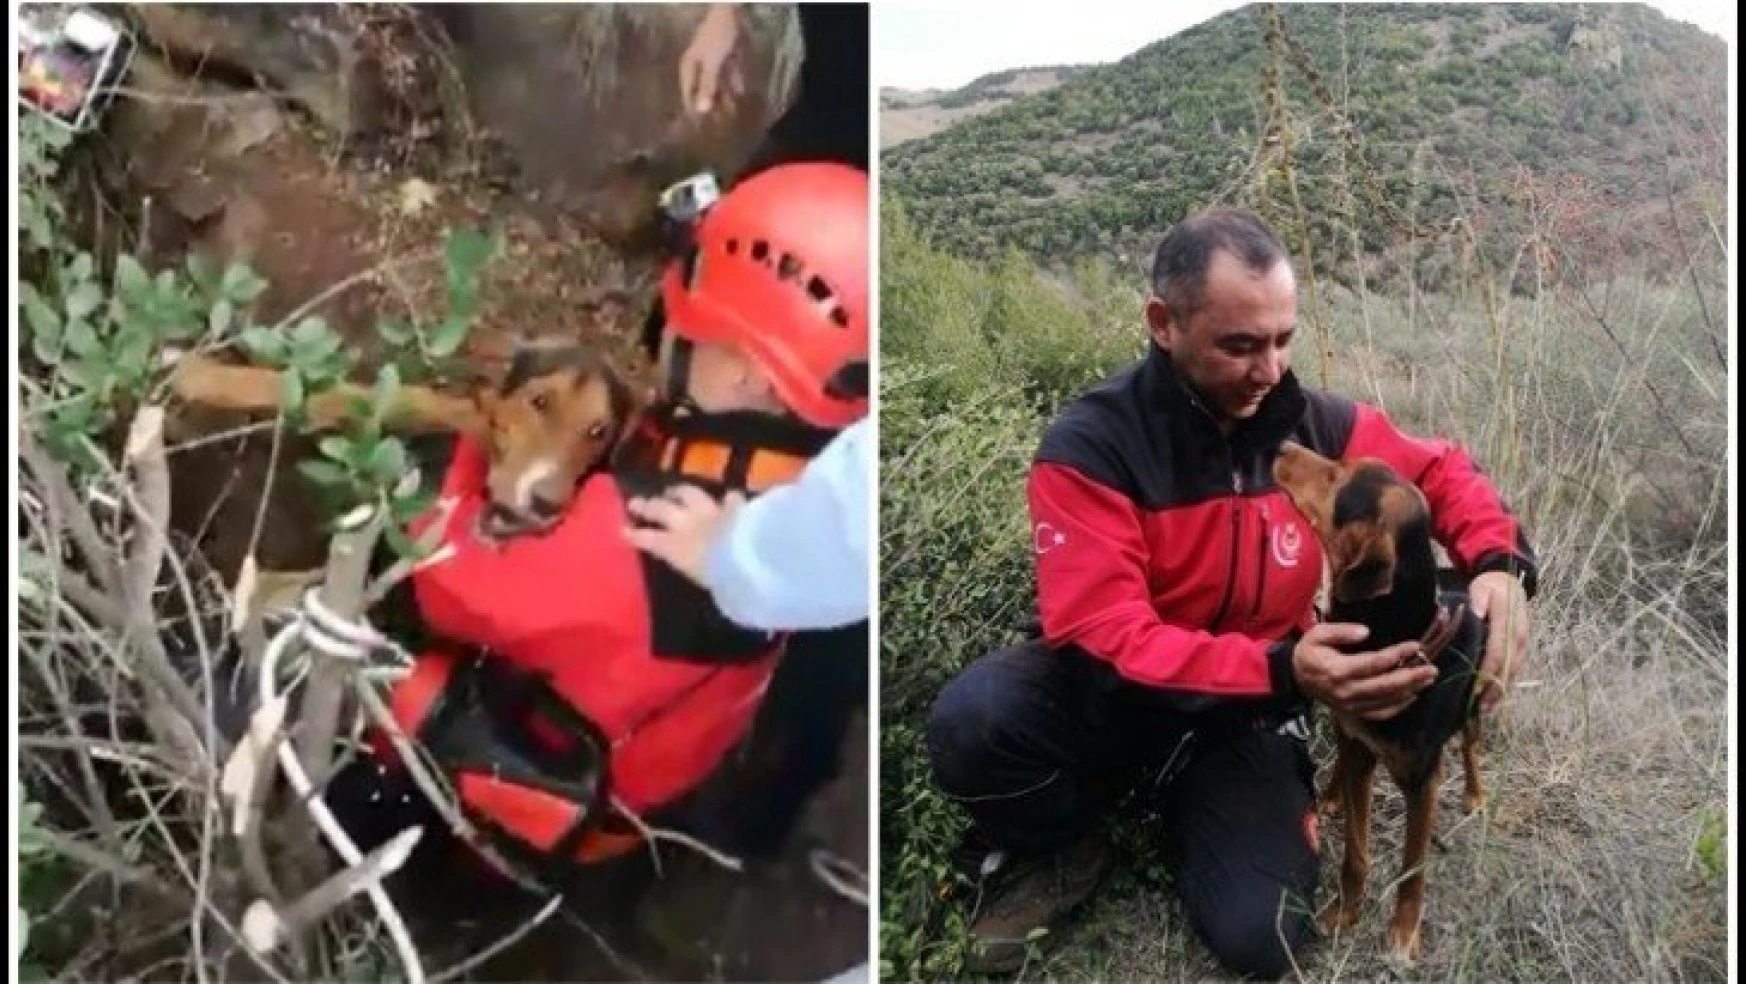 İzmir İtfaiyesi kuyuda mahsur kalan köpeği kurtardı